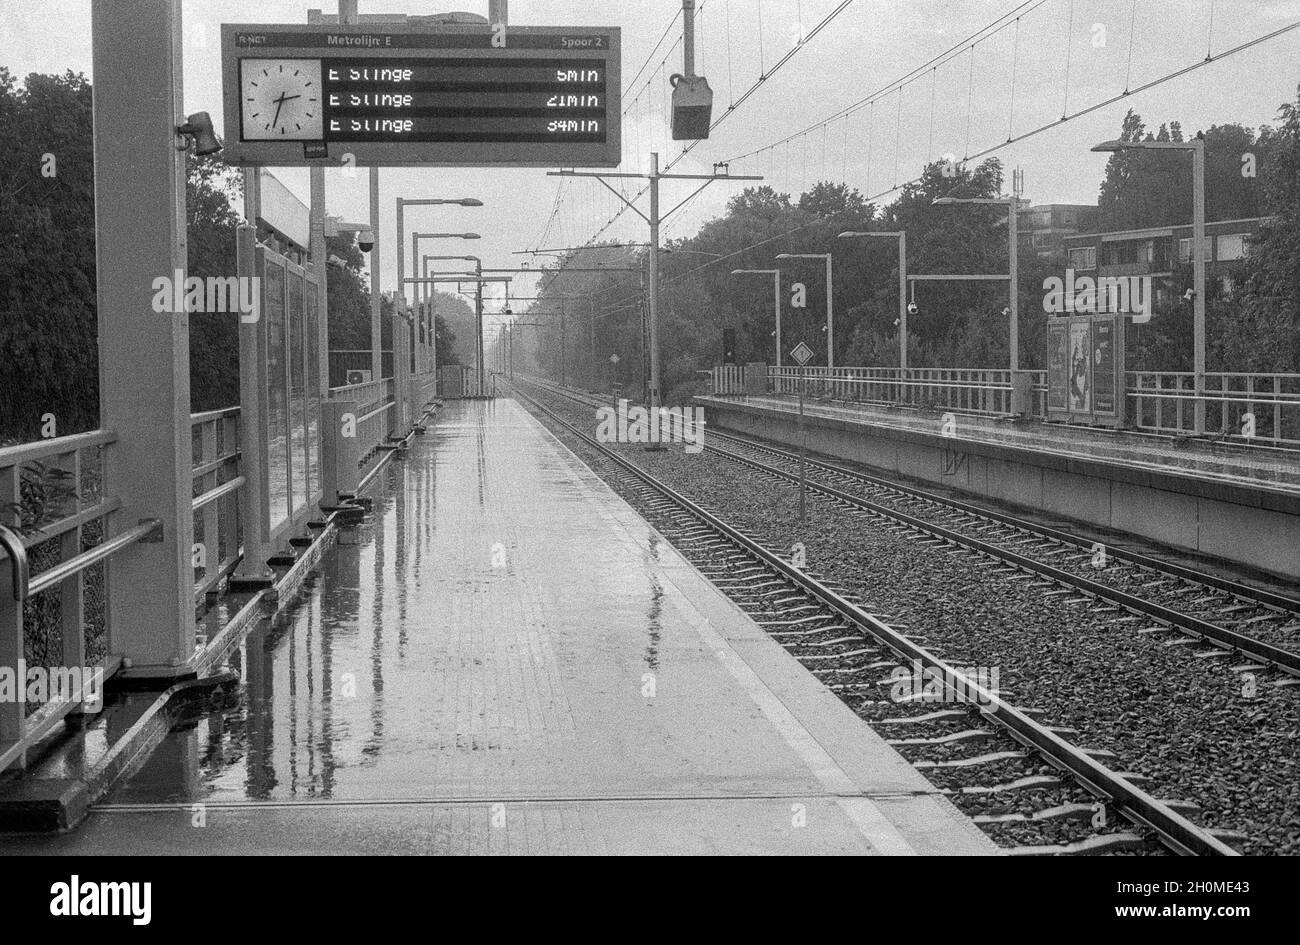 Rotterdam, pays-Bas.Un jour très pluvieux à une station de métro surélevée plate-forme, où il aurait dû être ensoleillé et chaud.Le changement climatique entraîne une augmentation considérable des pluies et des tempêtes dans les endroits où elles peuvent en fait causer beaucoup de dommages aux infrastructures, par exemple.Collection : gkf-analoog Banque D'Images